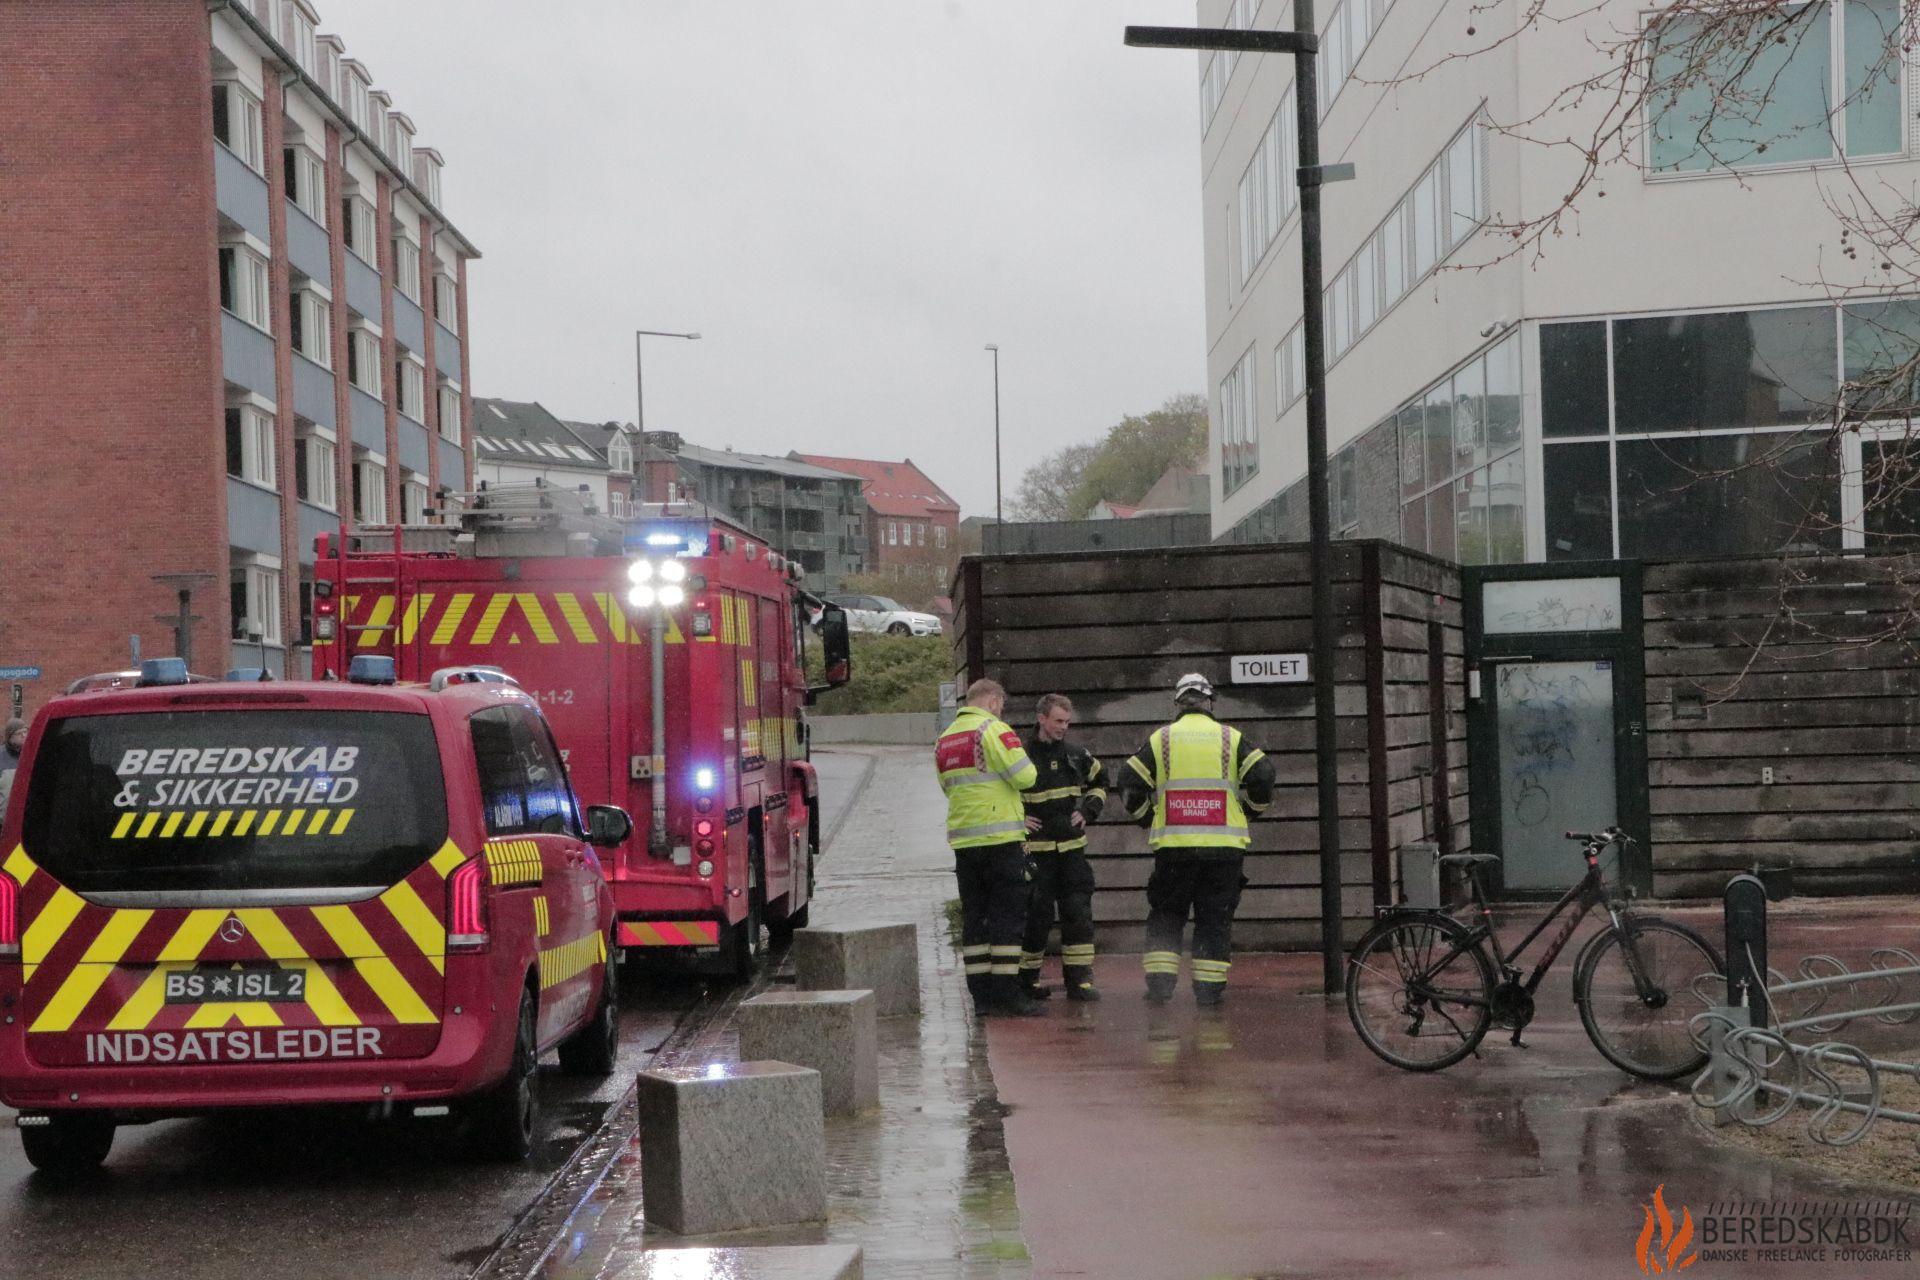 26/04-24 Brand på toiletbygning på Jens Otto Krags Plads i Randers